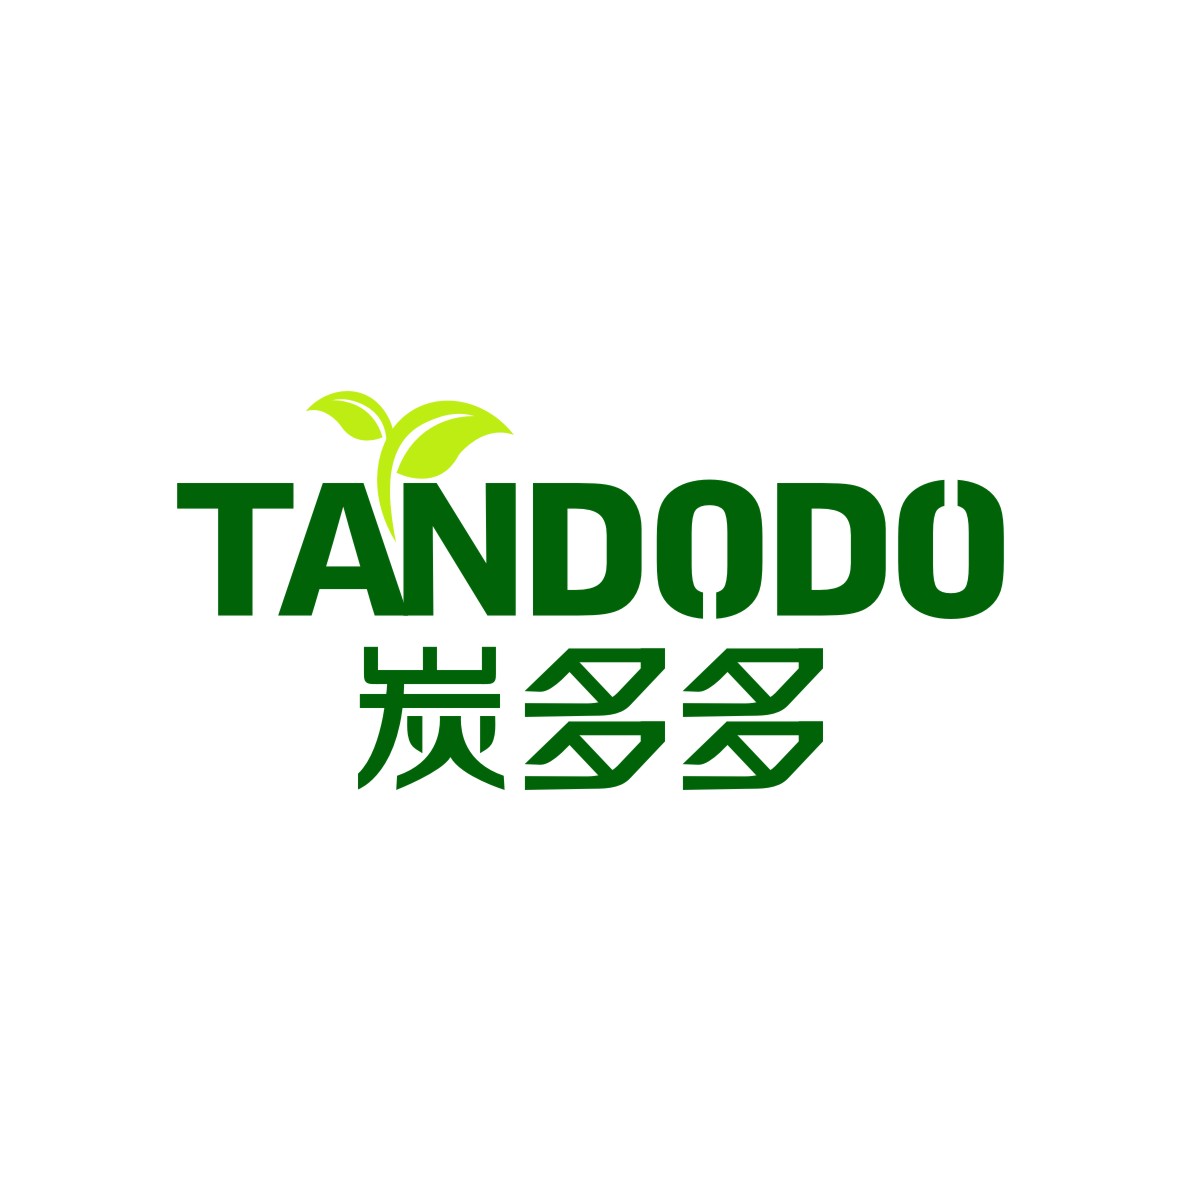 广州品翰文化发展有限公司商标炭多多 TANDODO（01类）多少钱？